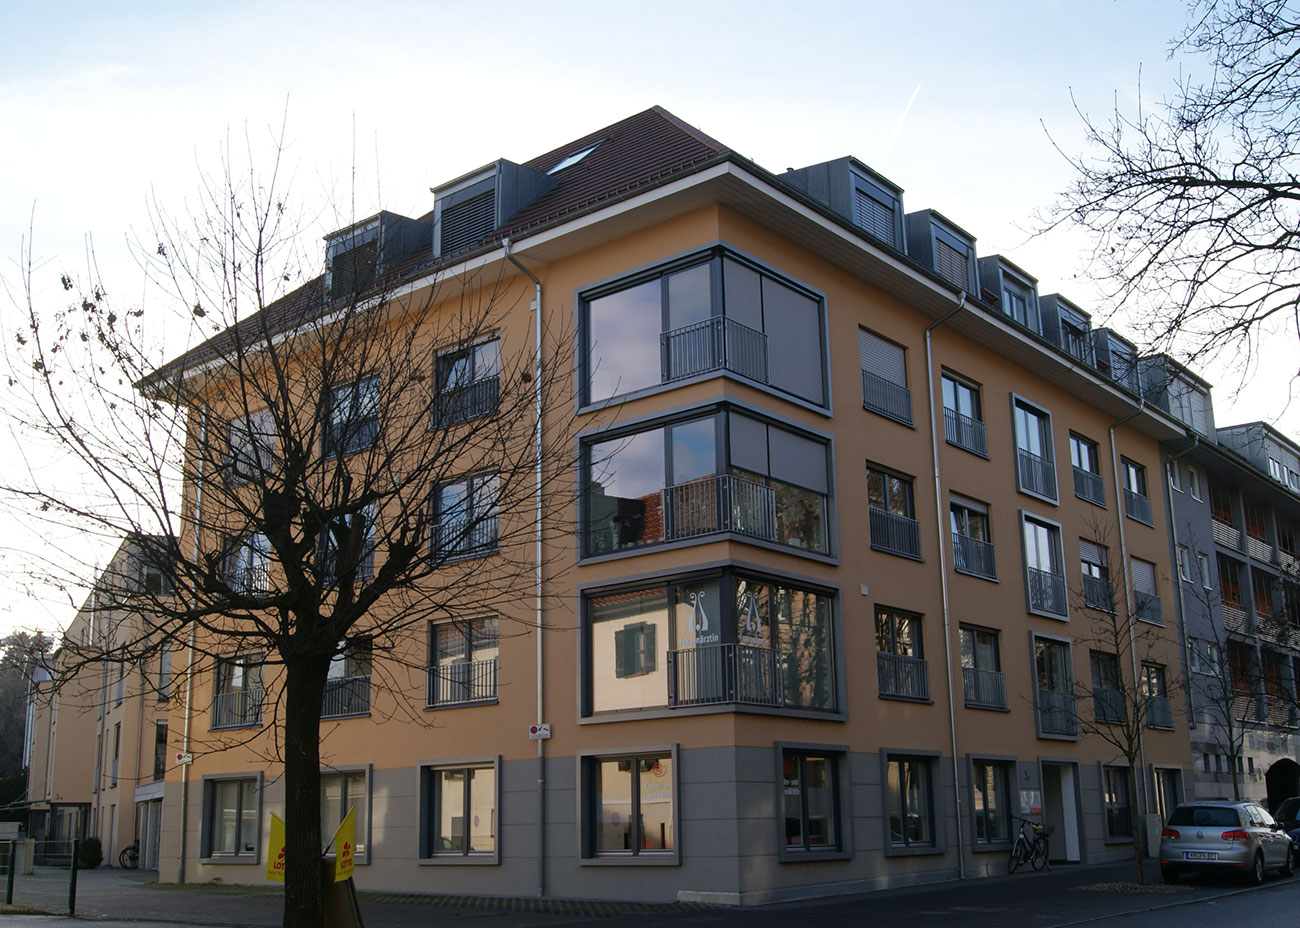 Neubau von zwei Mehrfamilienhäusern Emmishofer Strasse 3a-c, Konstanz